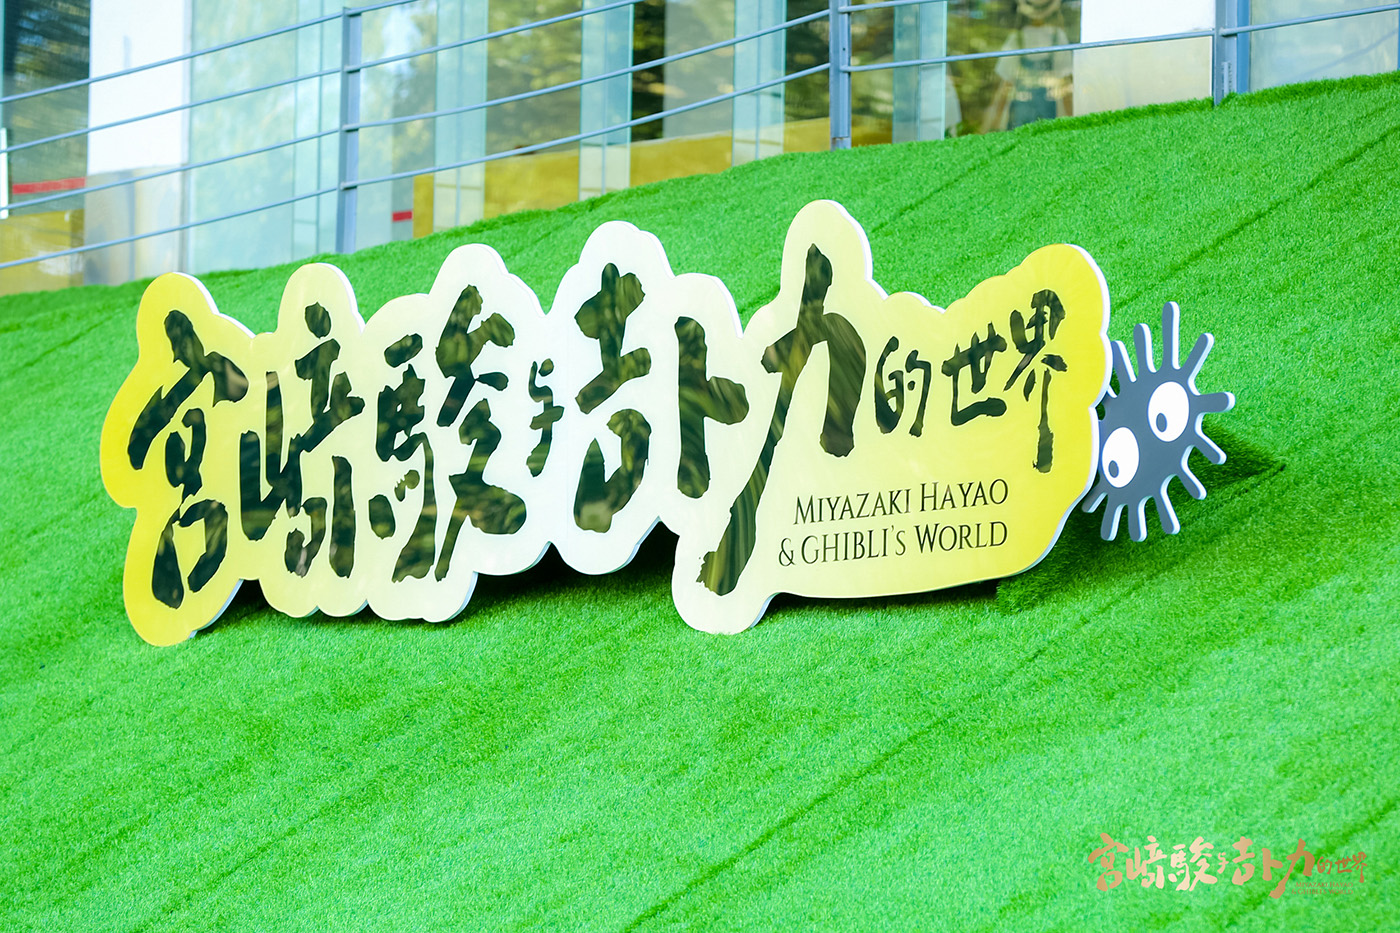 宫崎骏与吉卜力的世界 动画艺术展